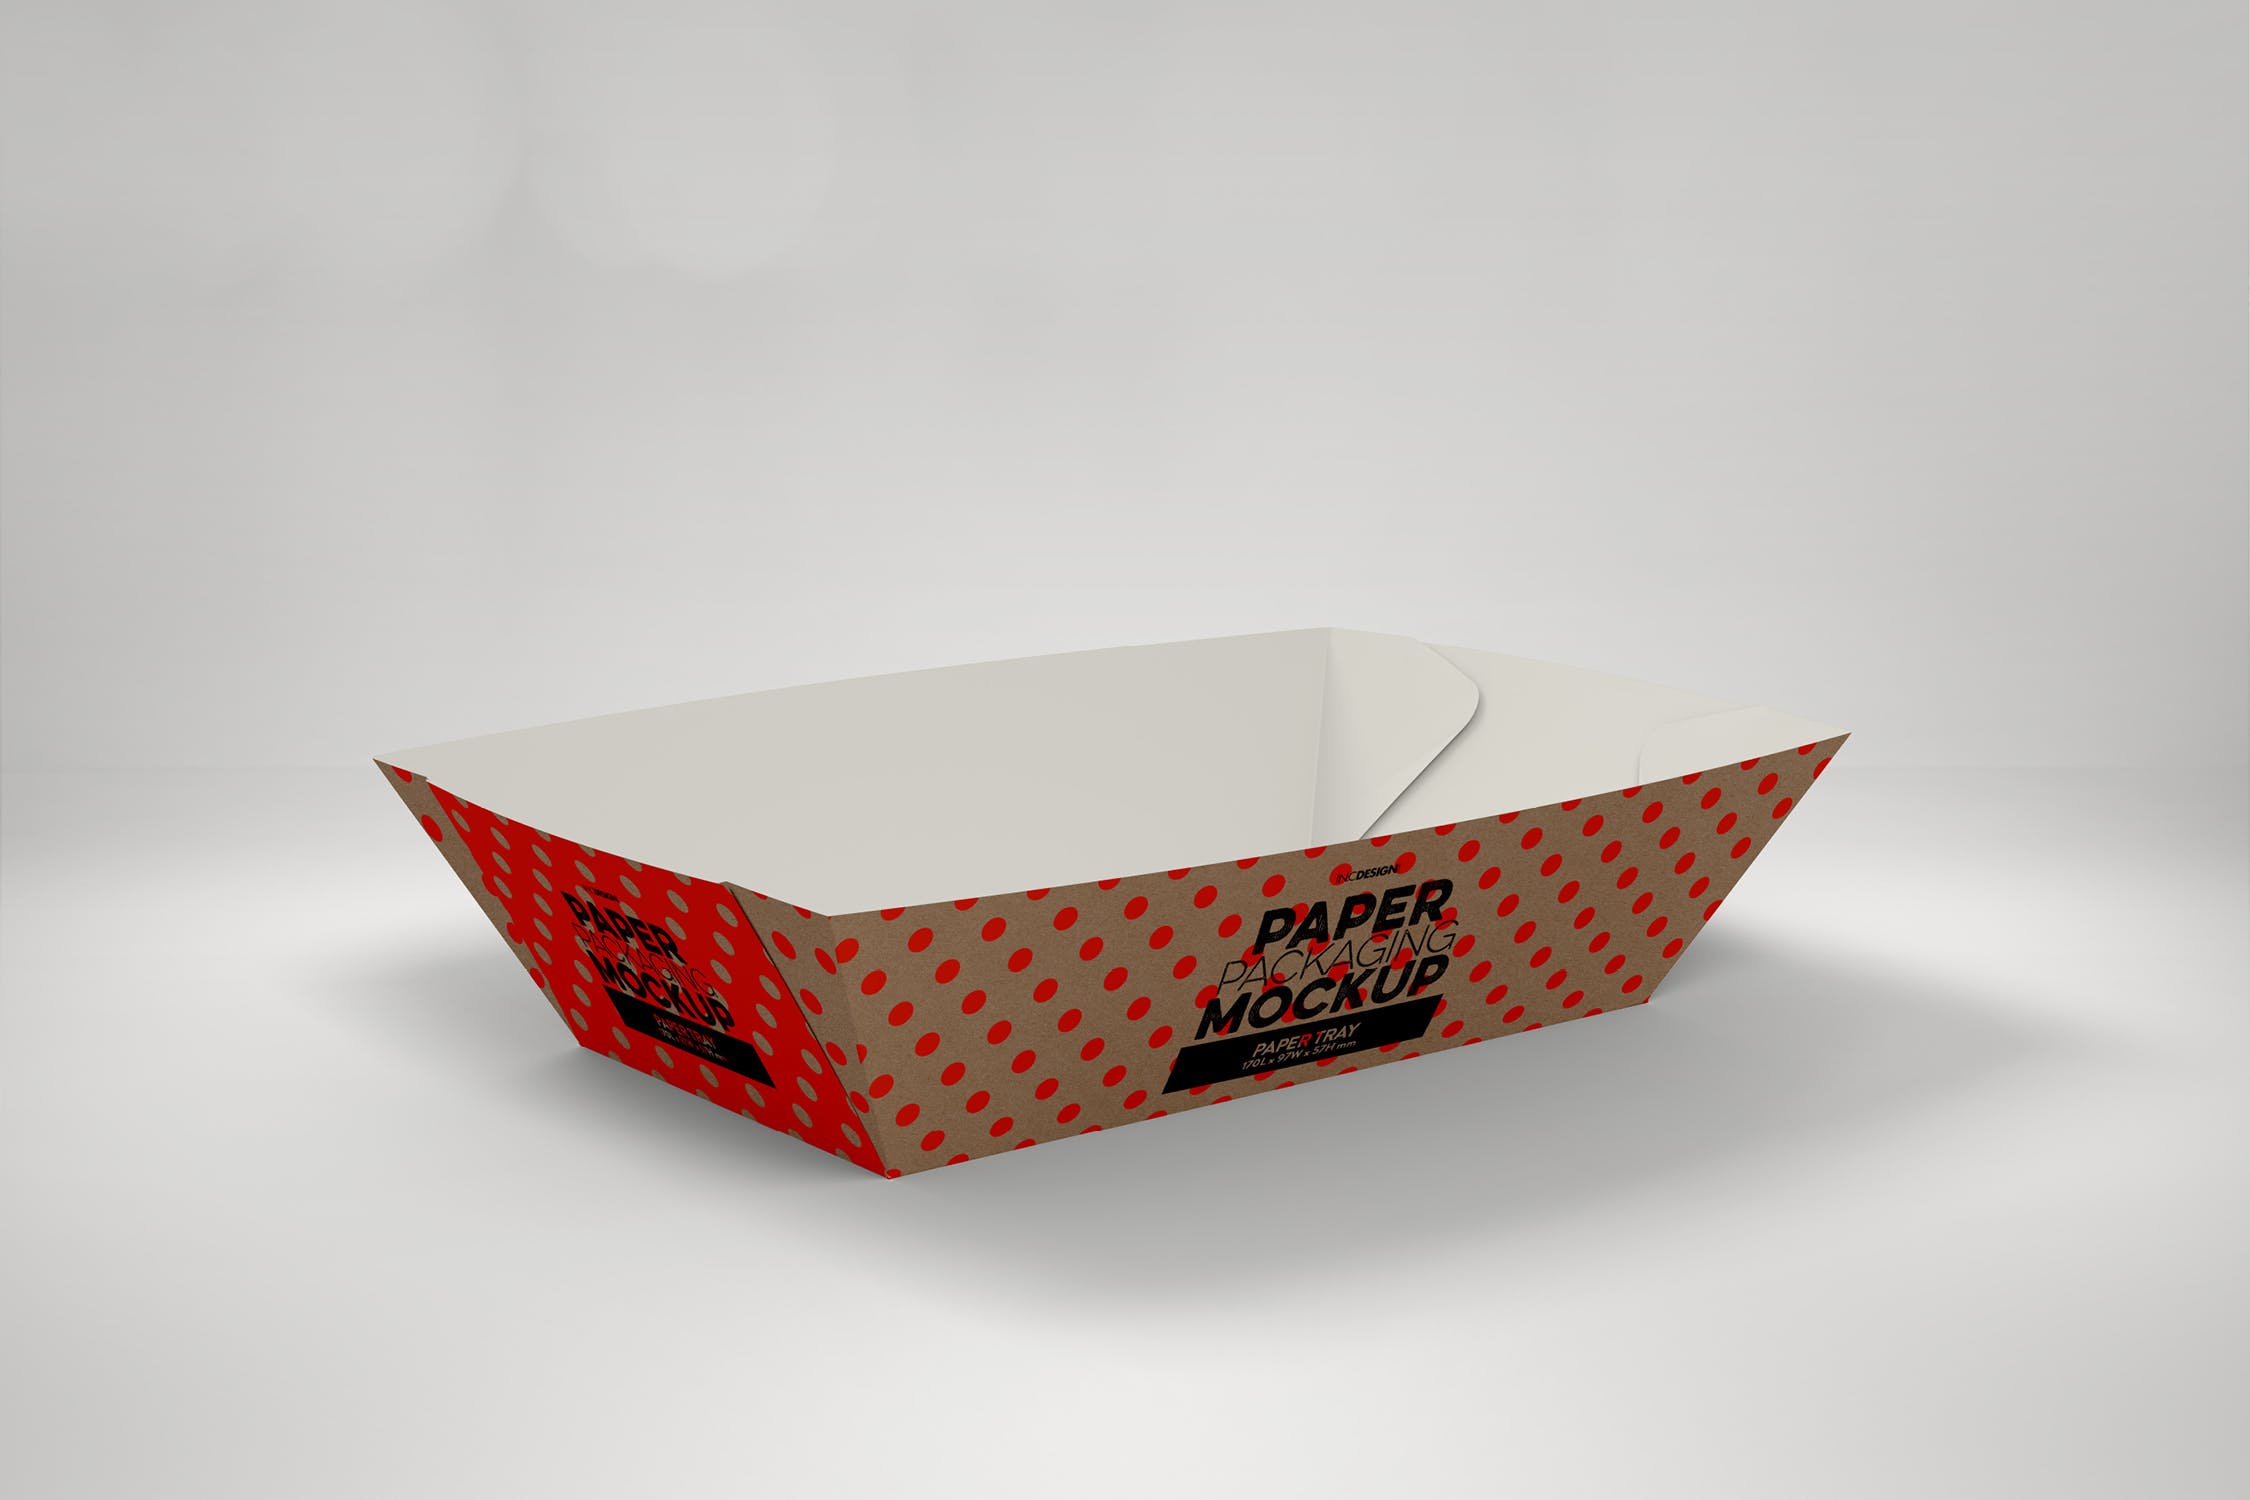 创意纸盘包装设计效果图样机模板 Paper Tray 1 Packaging Mockup插图2